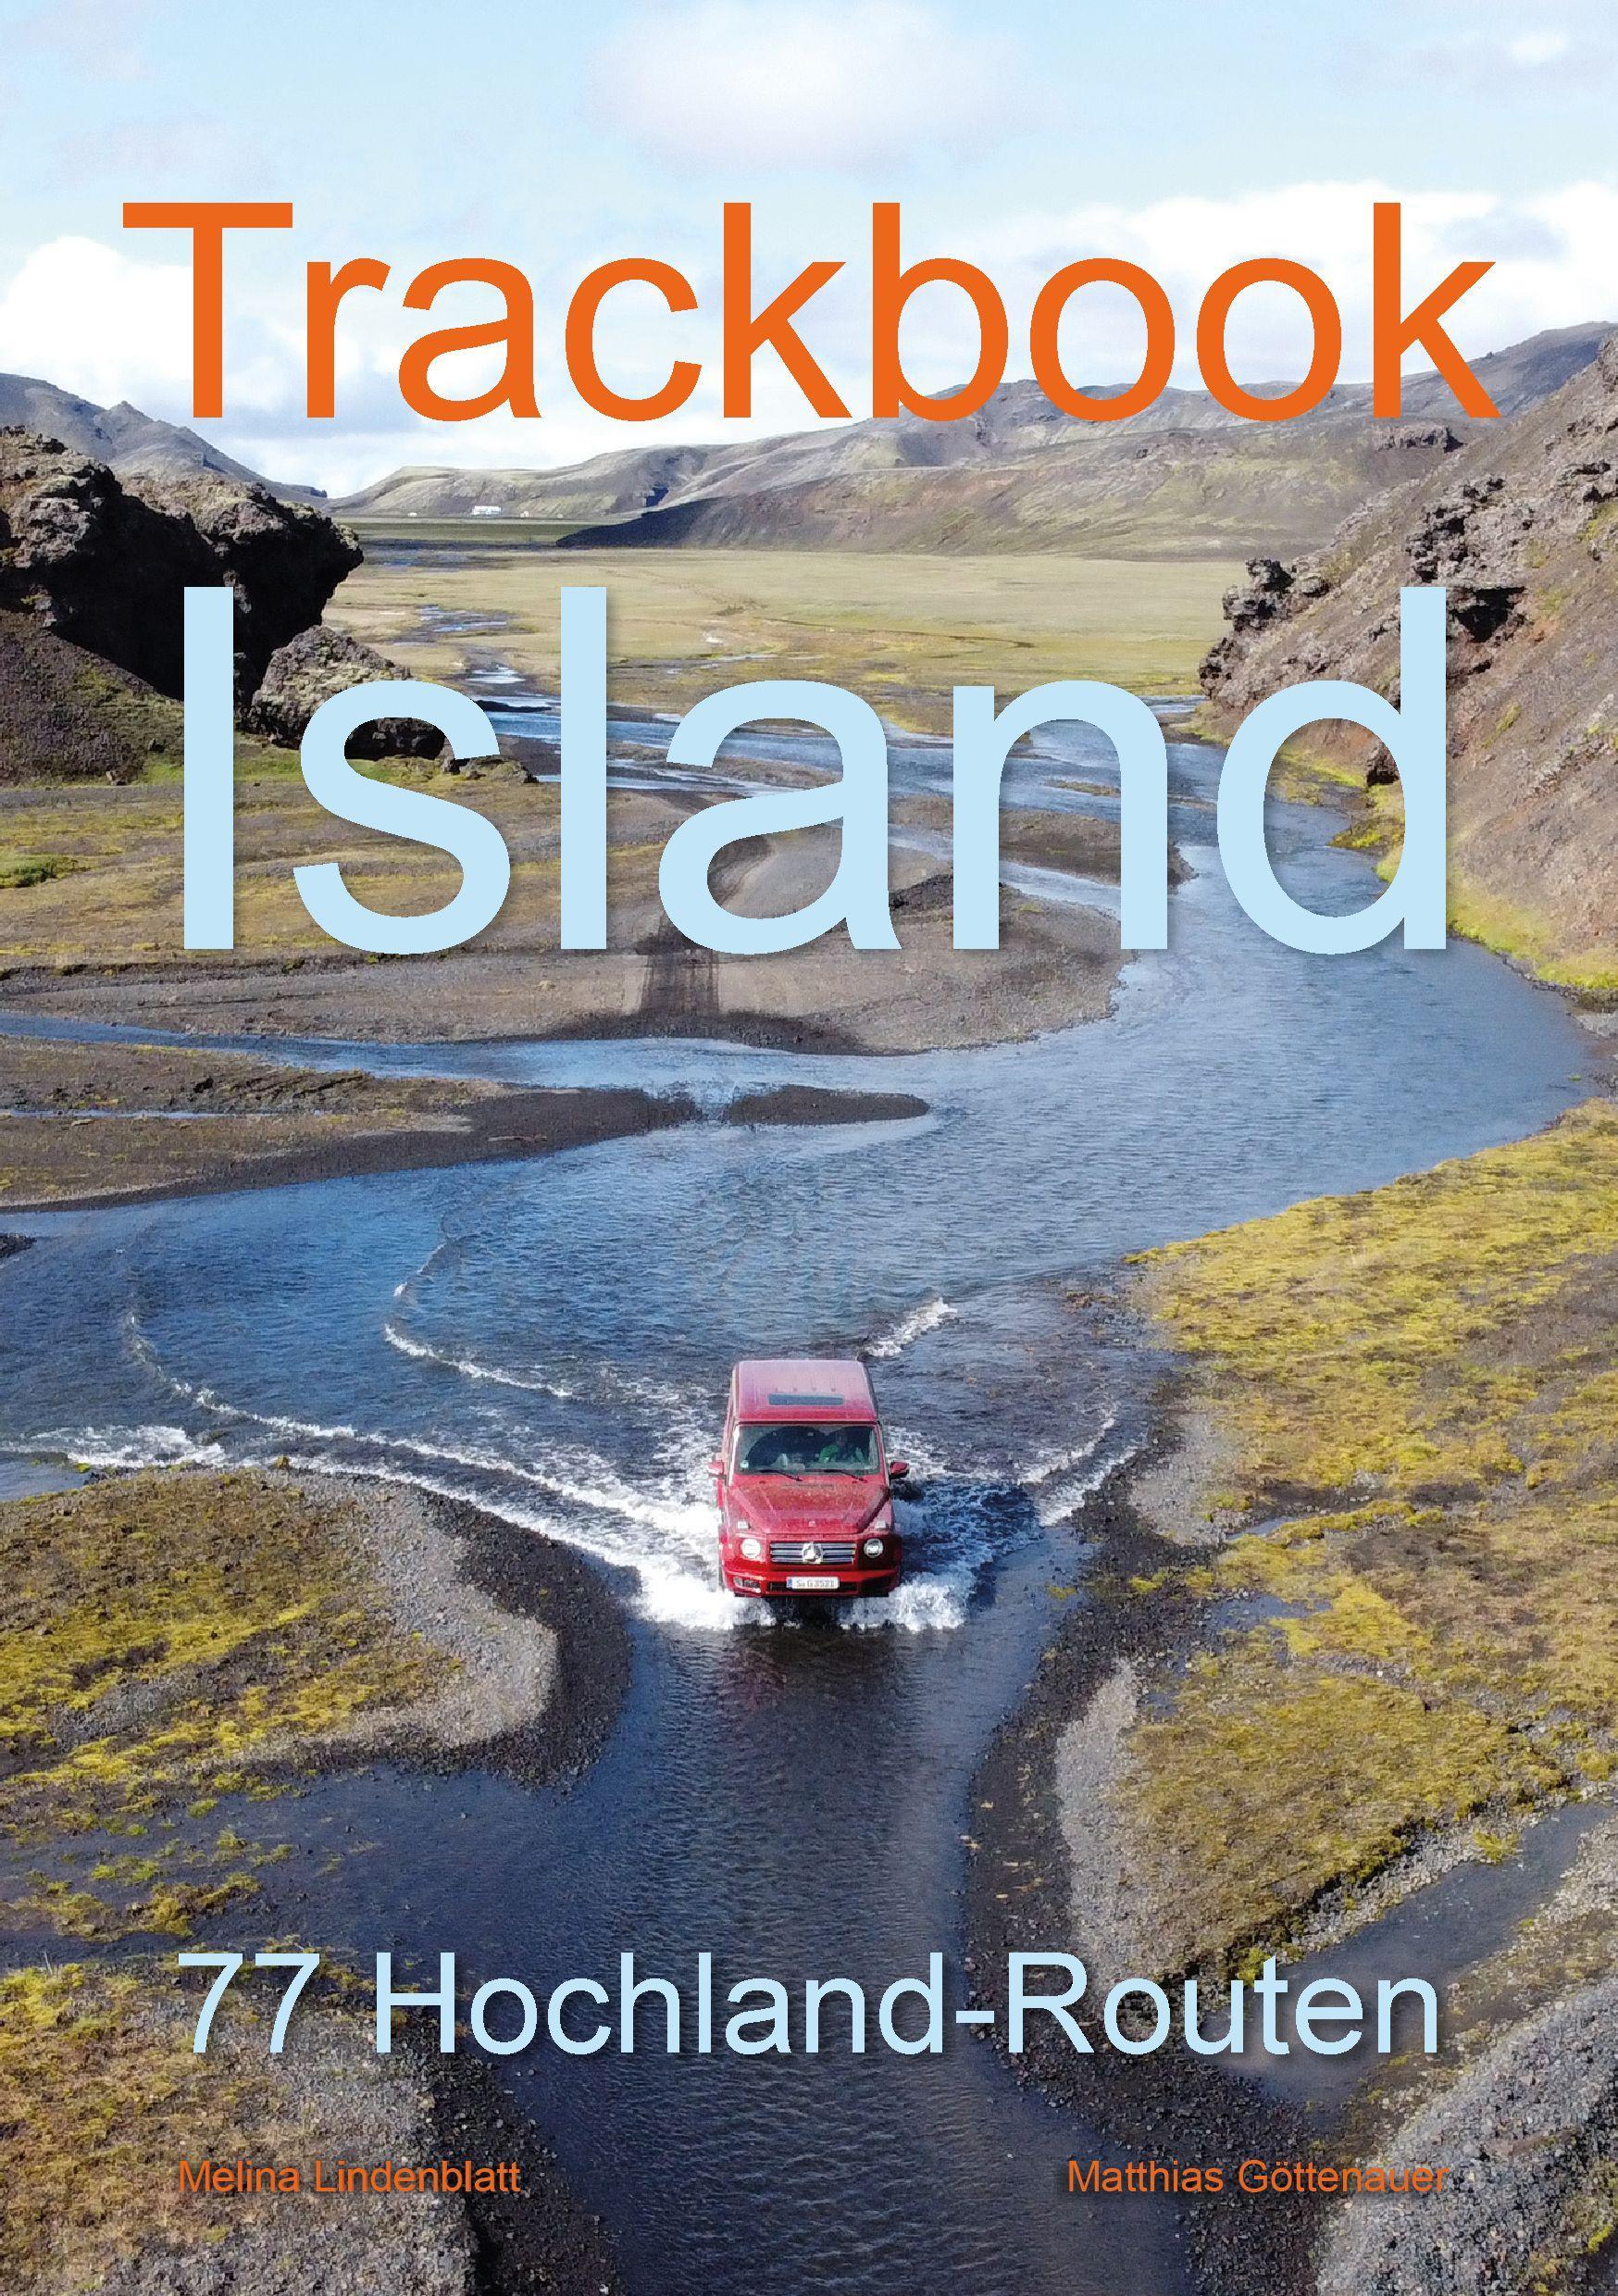 Trackbook Island Der unverzichtbare Begleiter für Fahrten ins Hochland